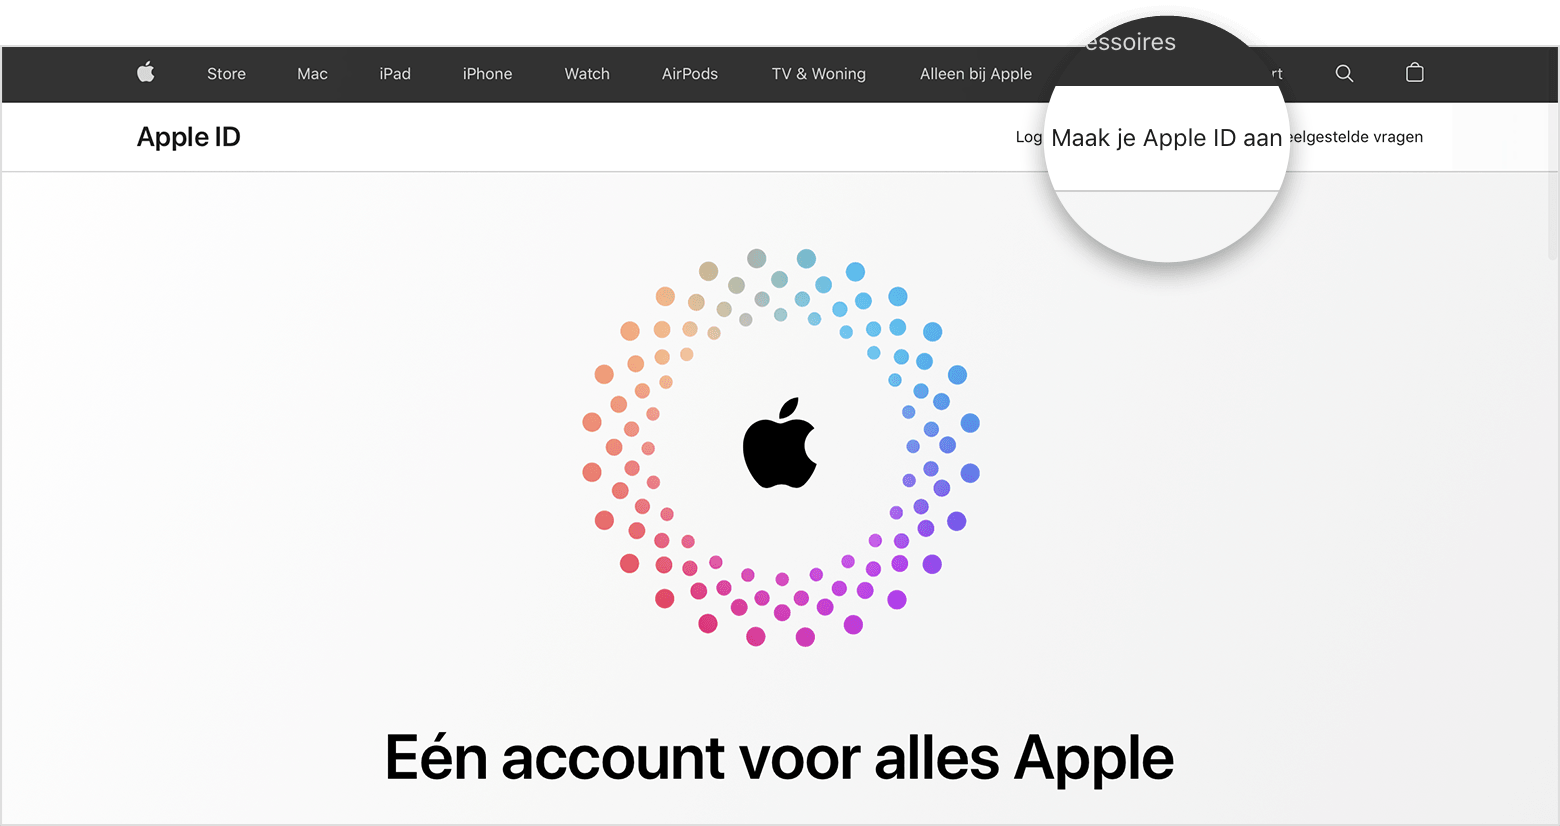 Schermafbeelding van appleid.apple.com, met in het midden een Apple logo omringd door concentrische gekleurde cirkels